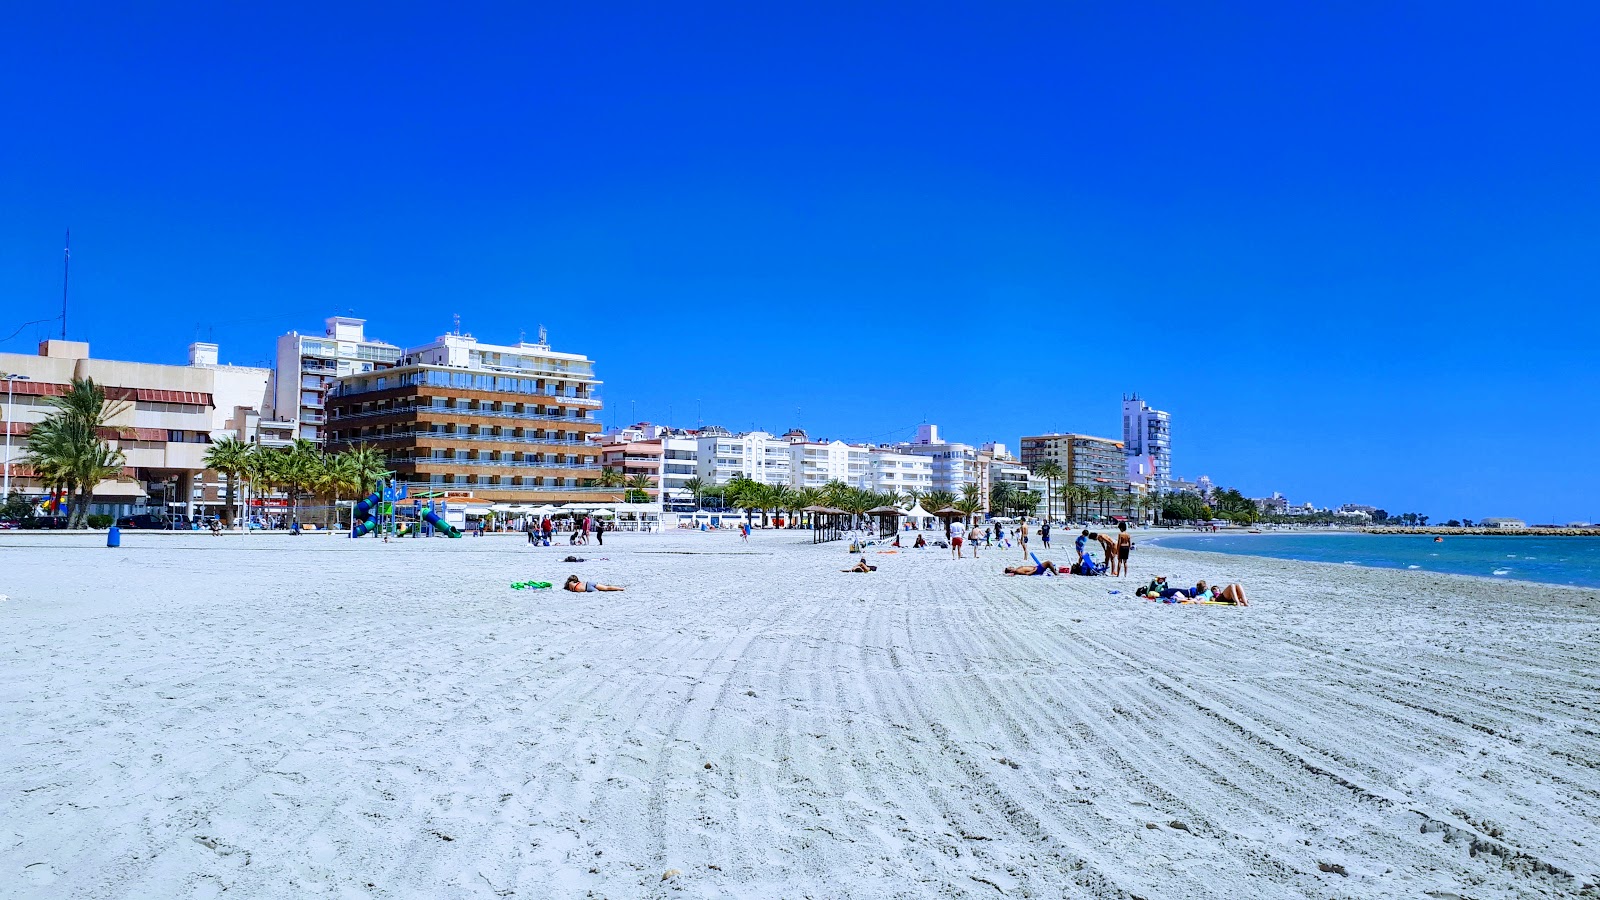 Photo de Beach Santa Pola 2 - endroit populaire parmi les connaisseurs de la détente